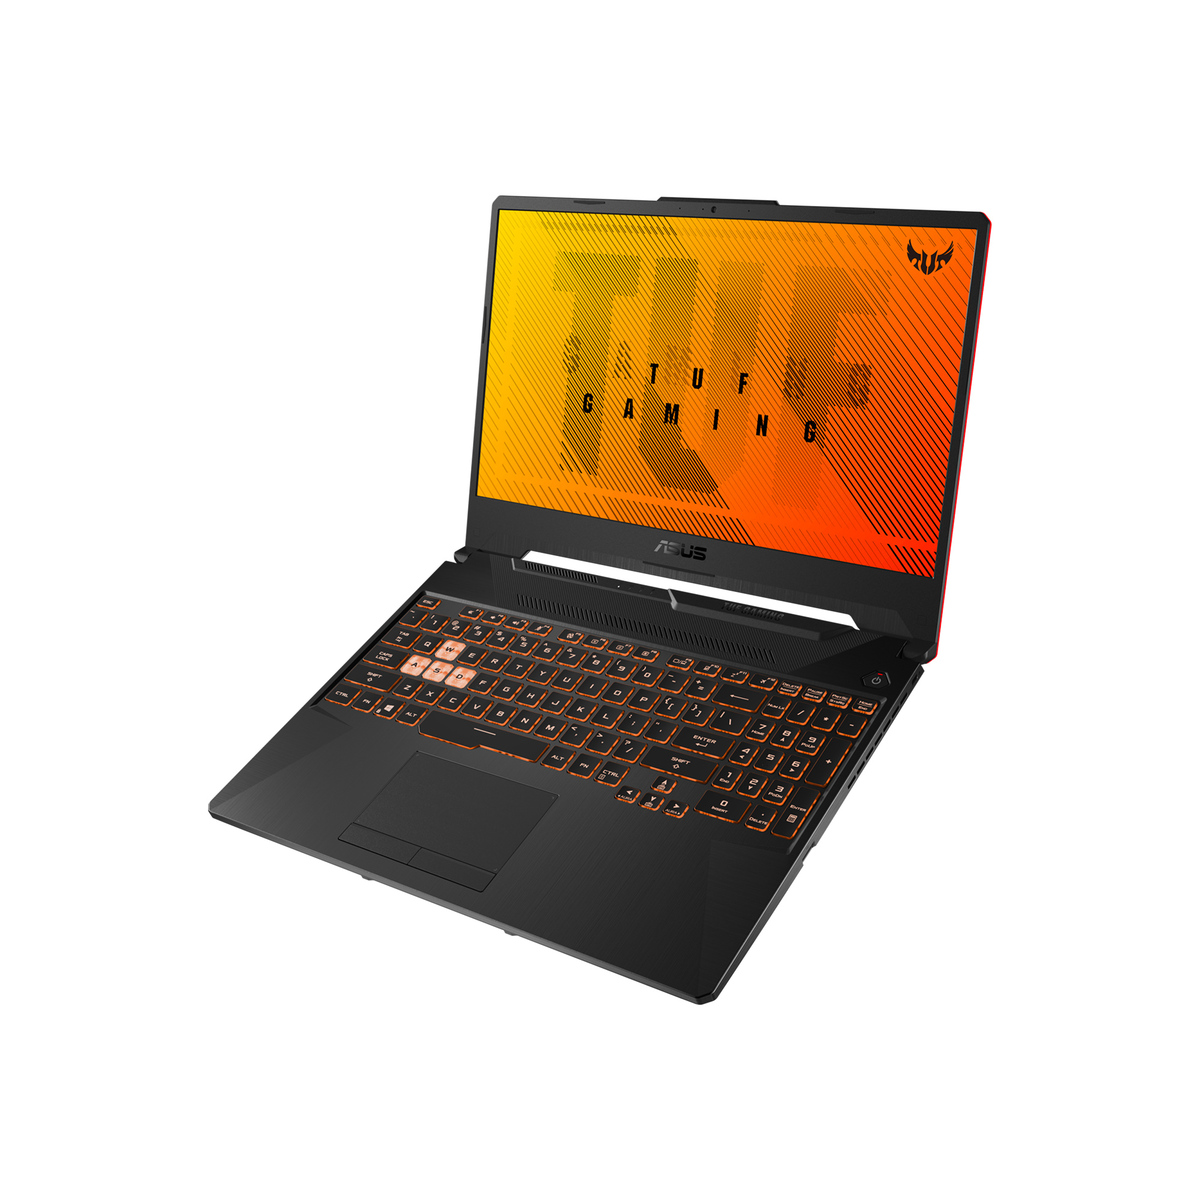 Asus TUF Gaming Notebook FX506LI-BQ057T,Intel Core i5,8GB RAM,512GB SSD,4GB GA,15.6� FHD,Windows 10